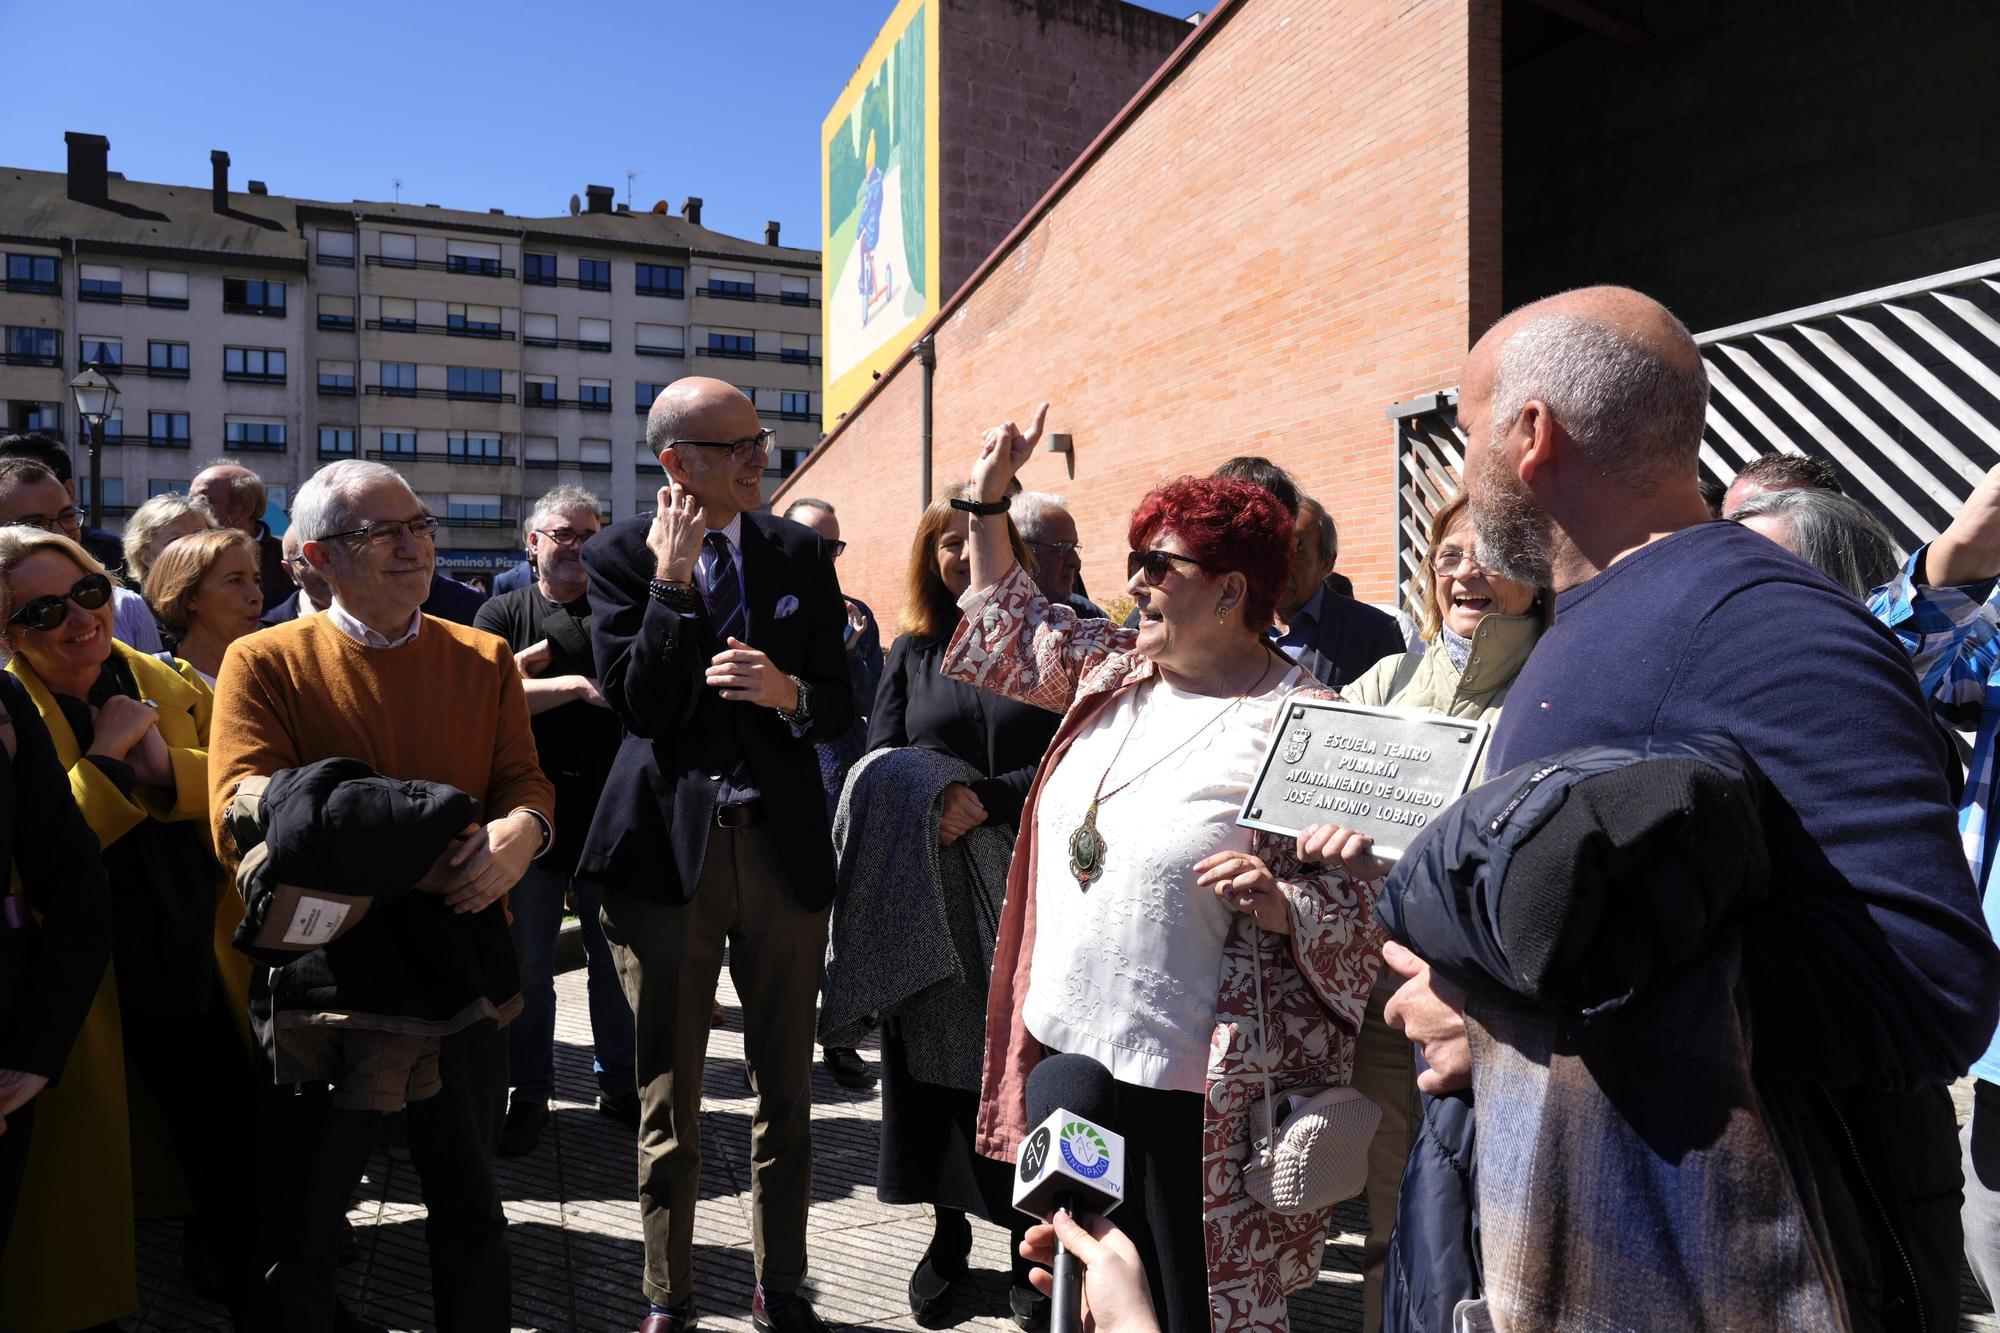 EN IMÁGENES: El actor asturiano José Antonio Lobato ya da nombre a la escuela-teatro de Pumarín en Oviedo